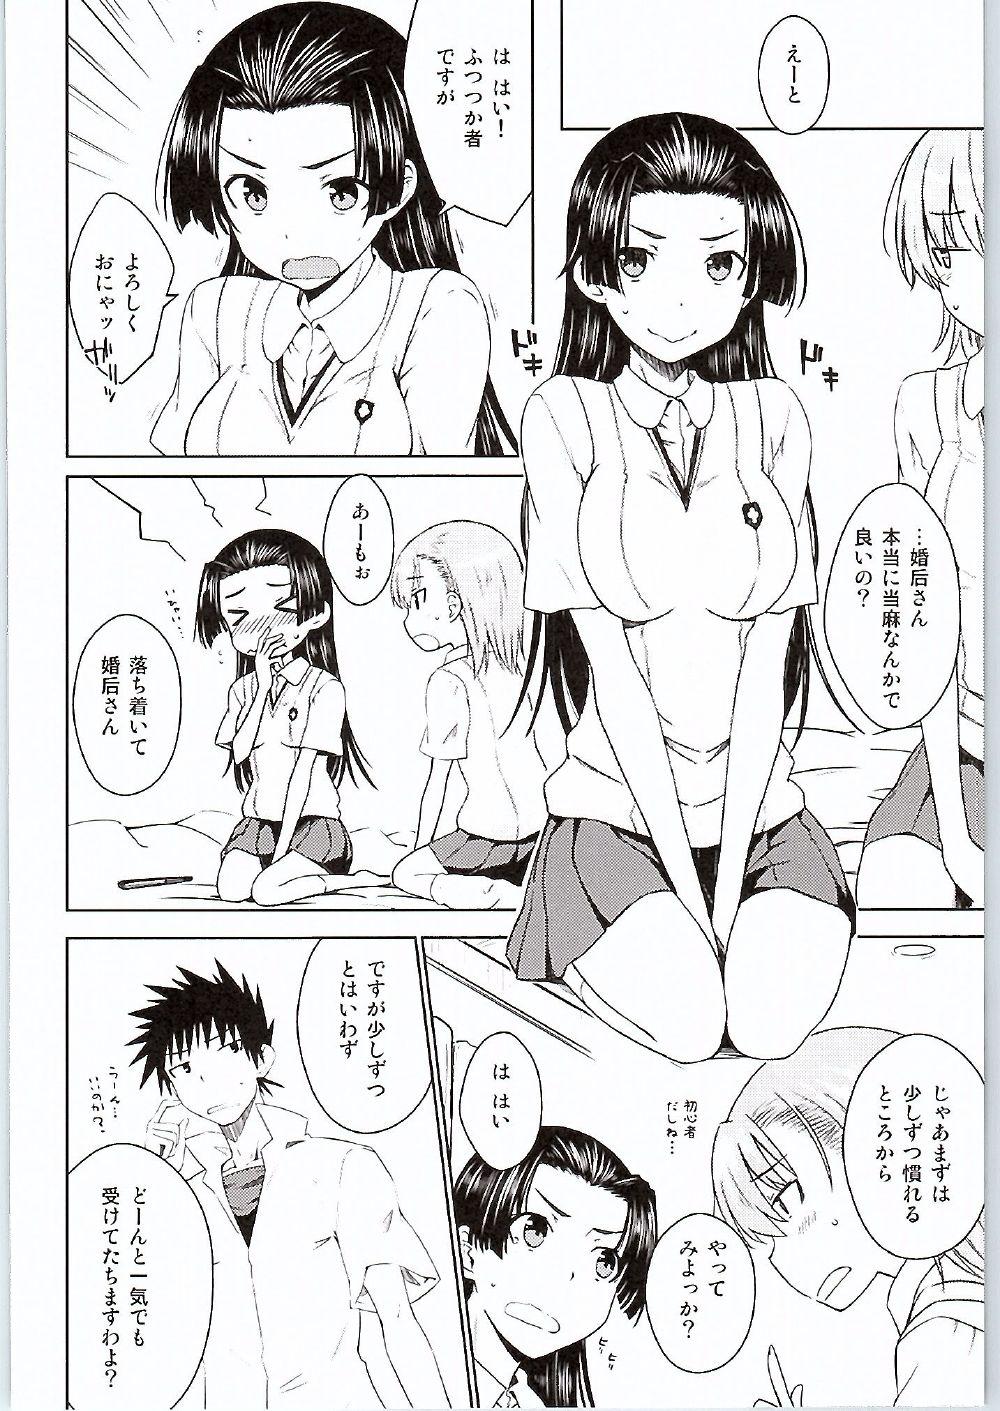 Sexteen BEAUTIFUL SHINE - Toaru kagaku no railgun Sucking Cock - Page 7